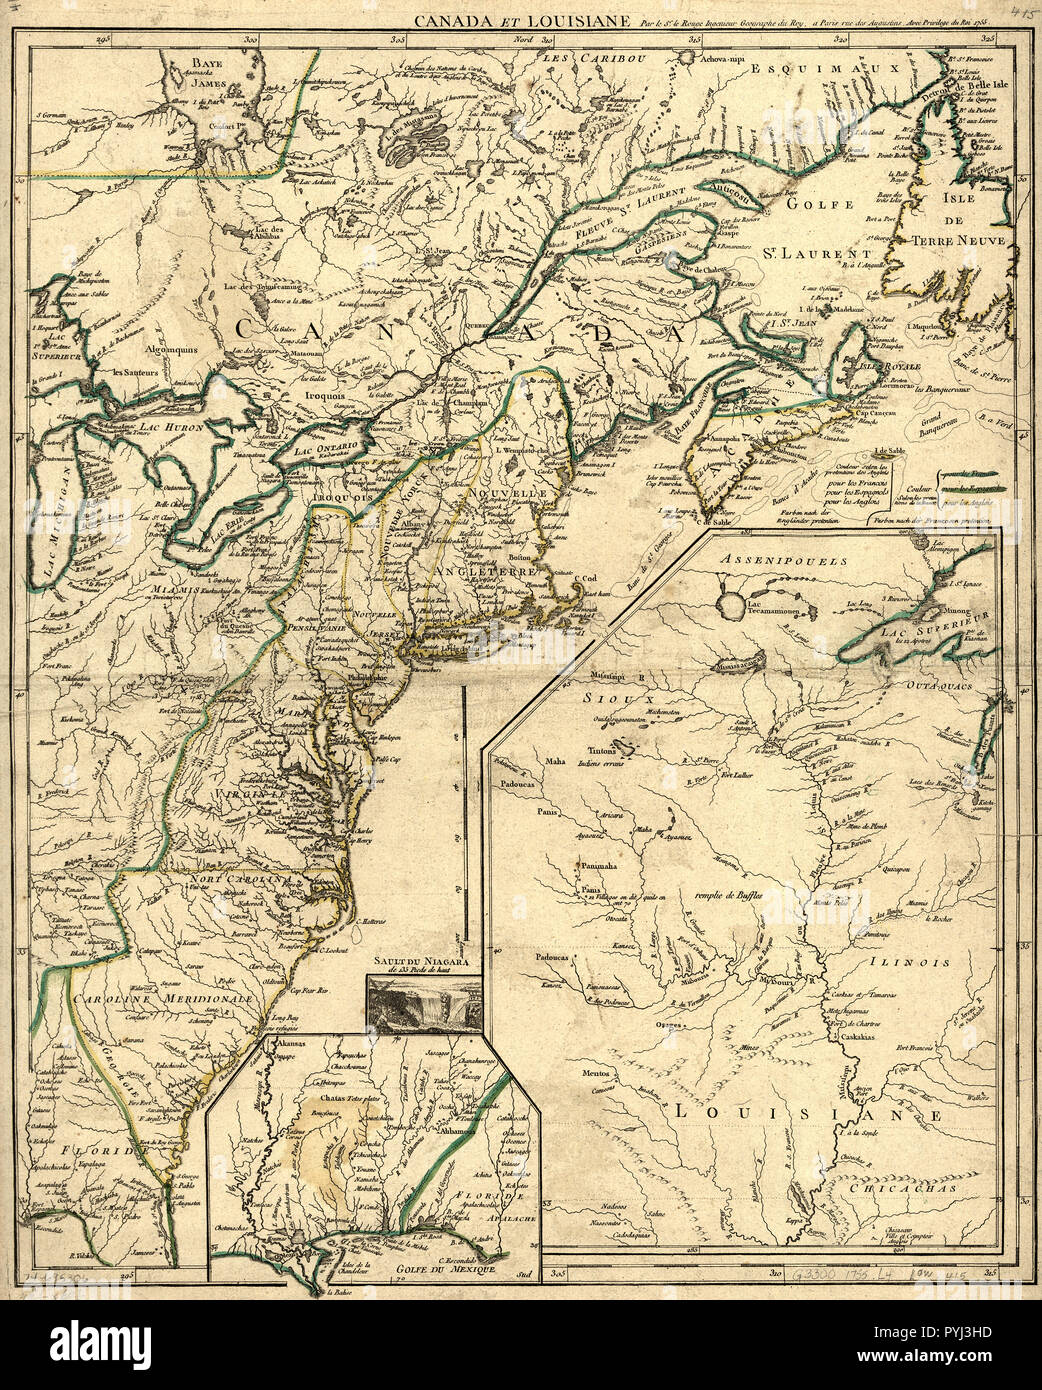 Vintage Maps / Antique Maps - Canada et Louisiane map ca. 1755 Stock Photo